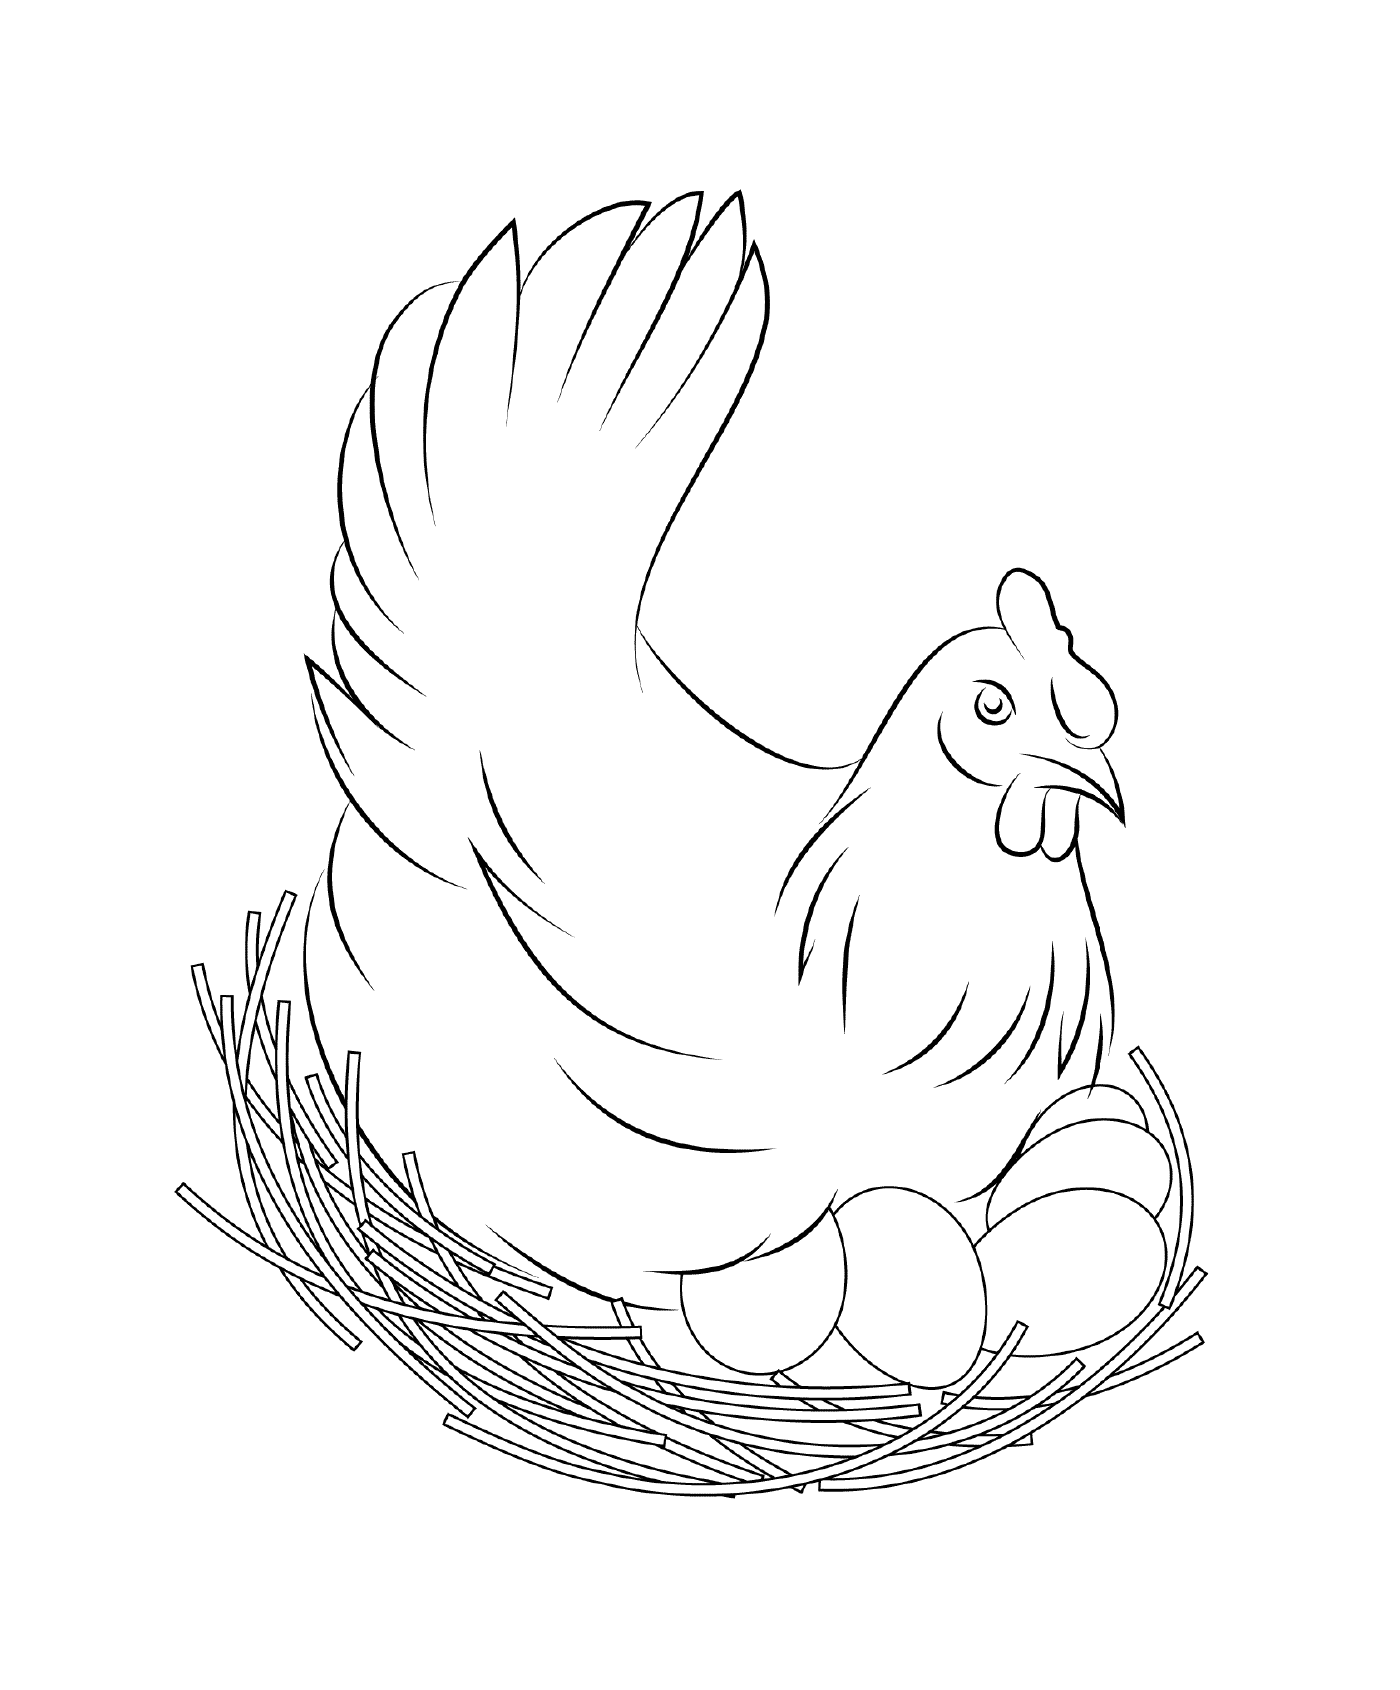  Цыпленок инкубируется в гнезде 